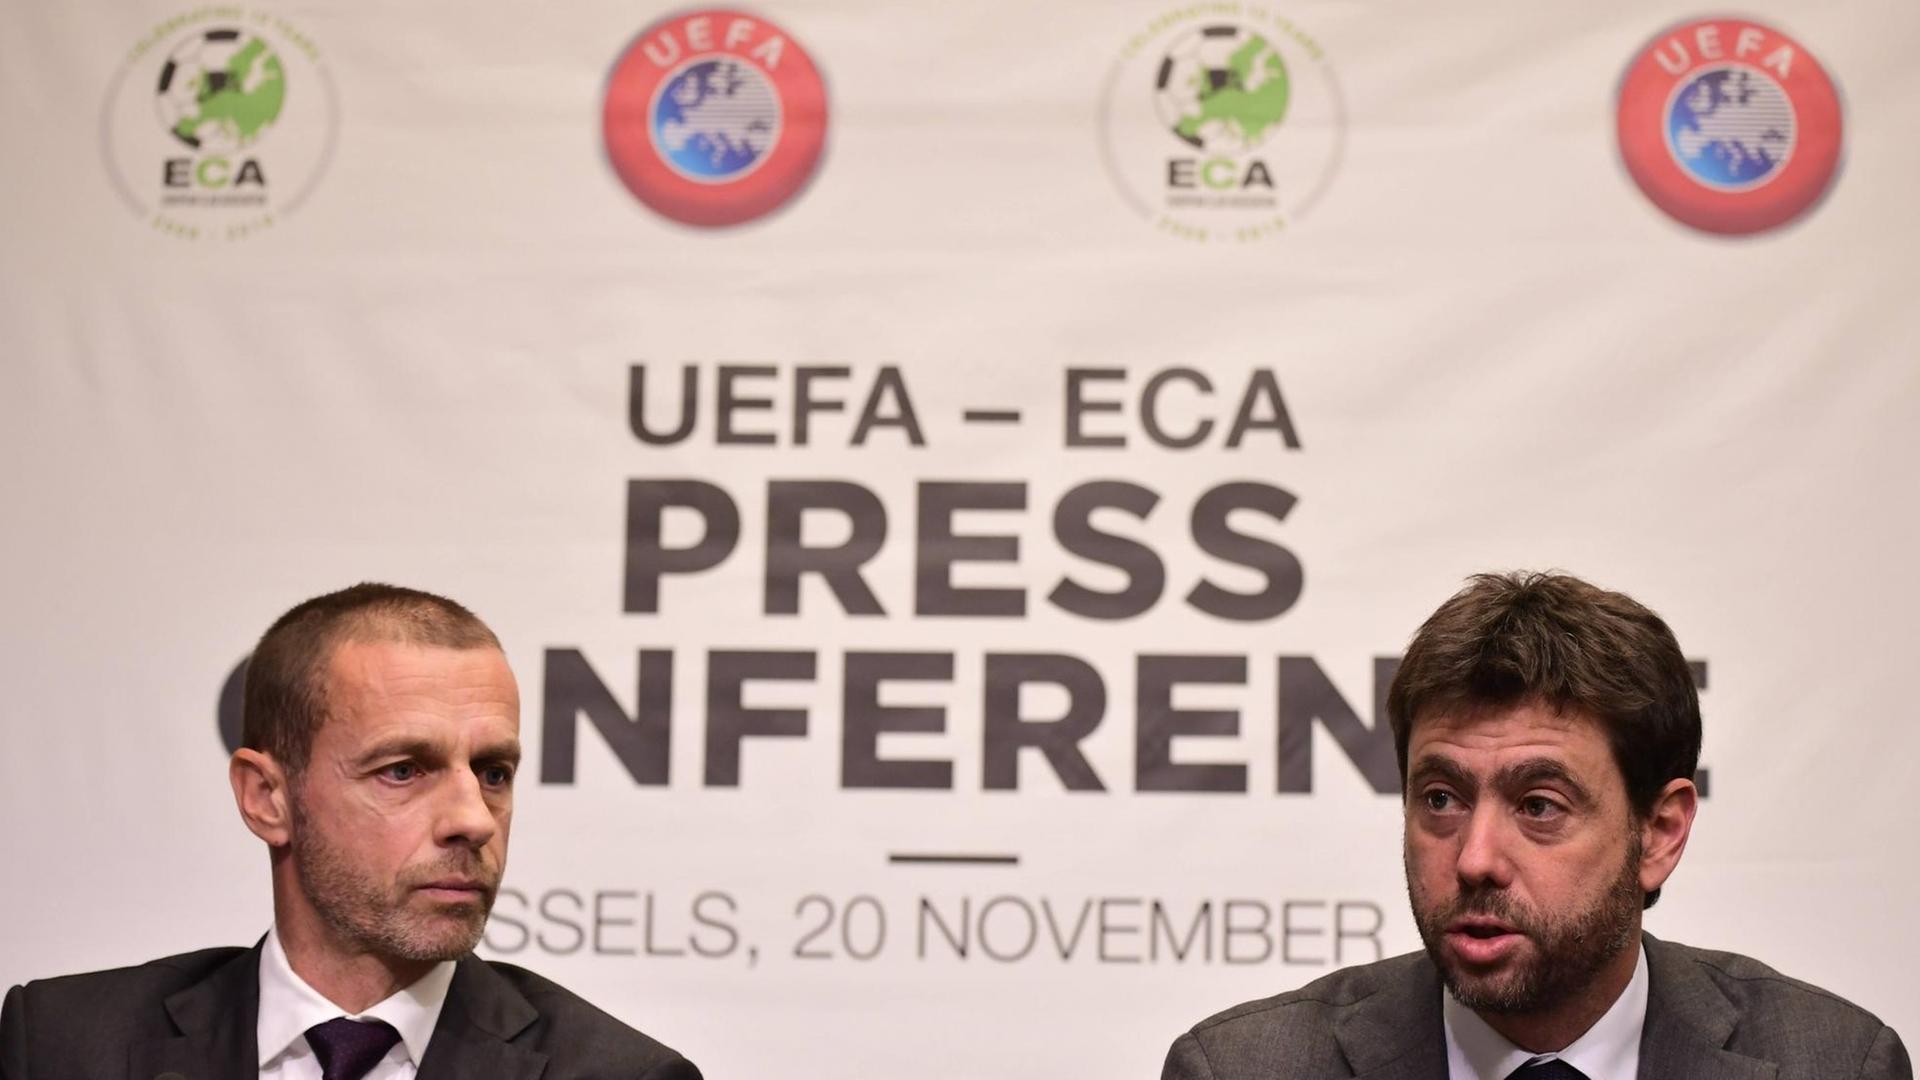 UEFA-Präsident Aleksander Ceferin und der ECA-Vorsitzende Andrea Agnelli bei einer Pressekonferenz in Brüssel am 20.11.2018